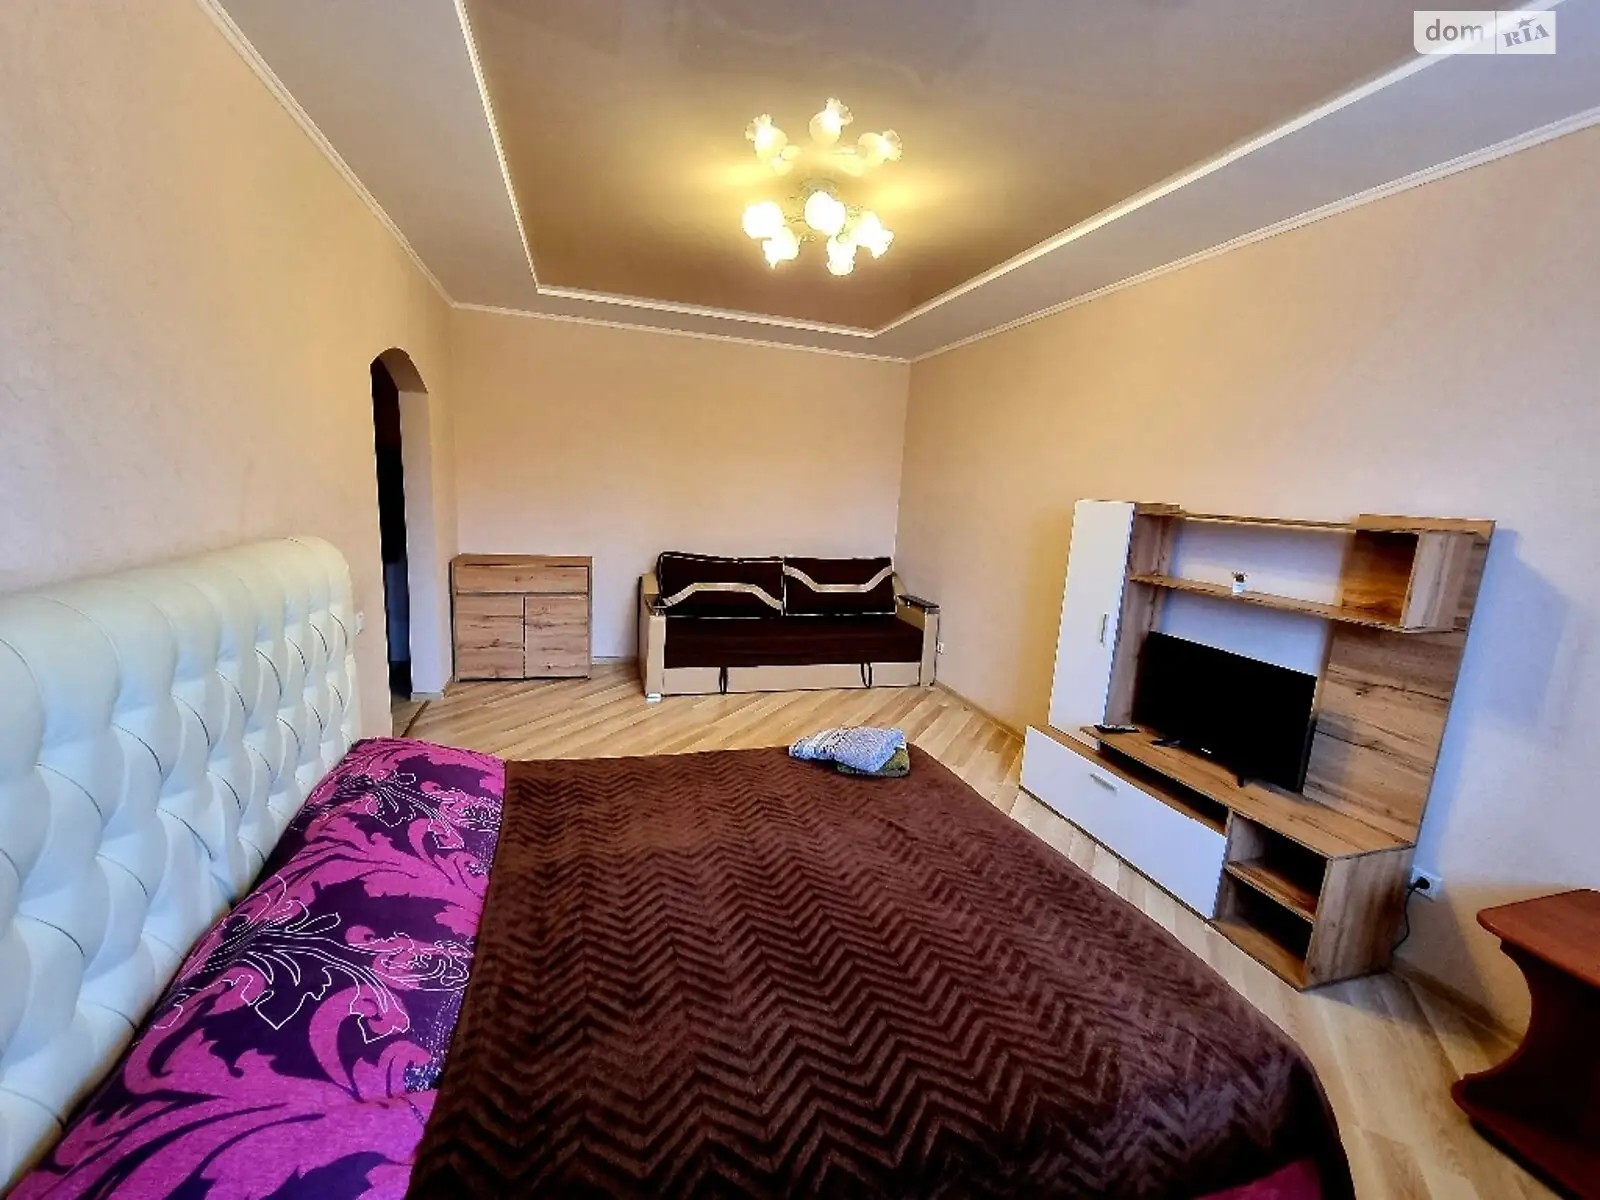 2-кімнатна квартира у Луцьку, цена: 1000 грн